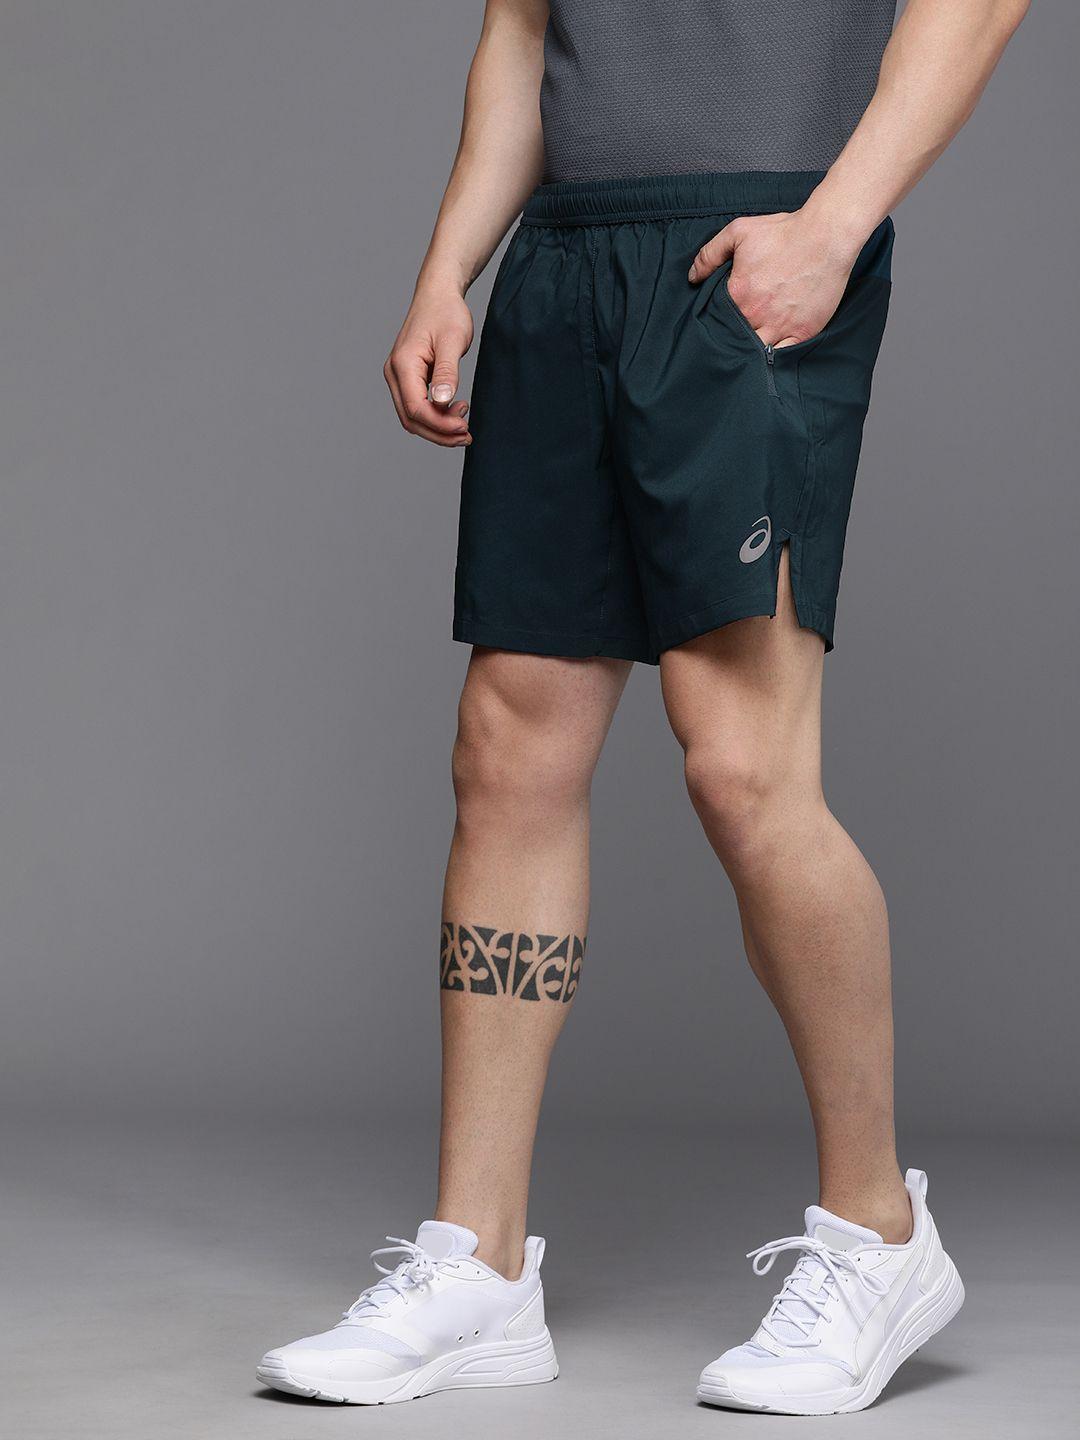 asics men teal green brand logo printed running sports shorts